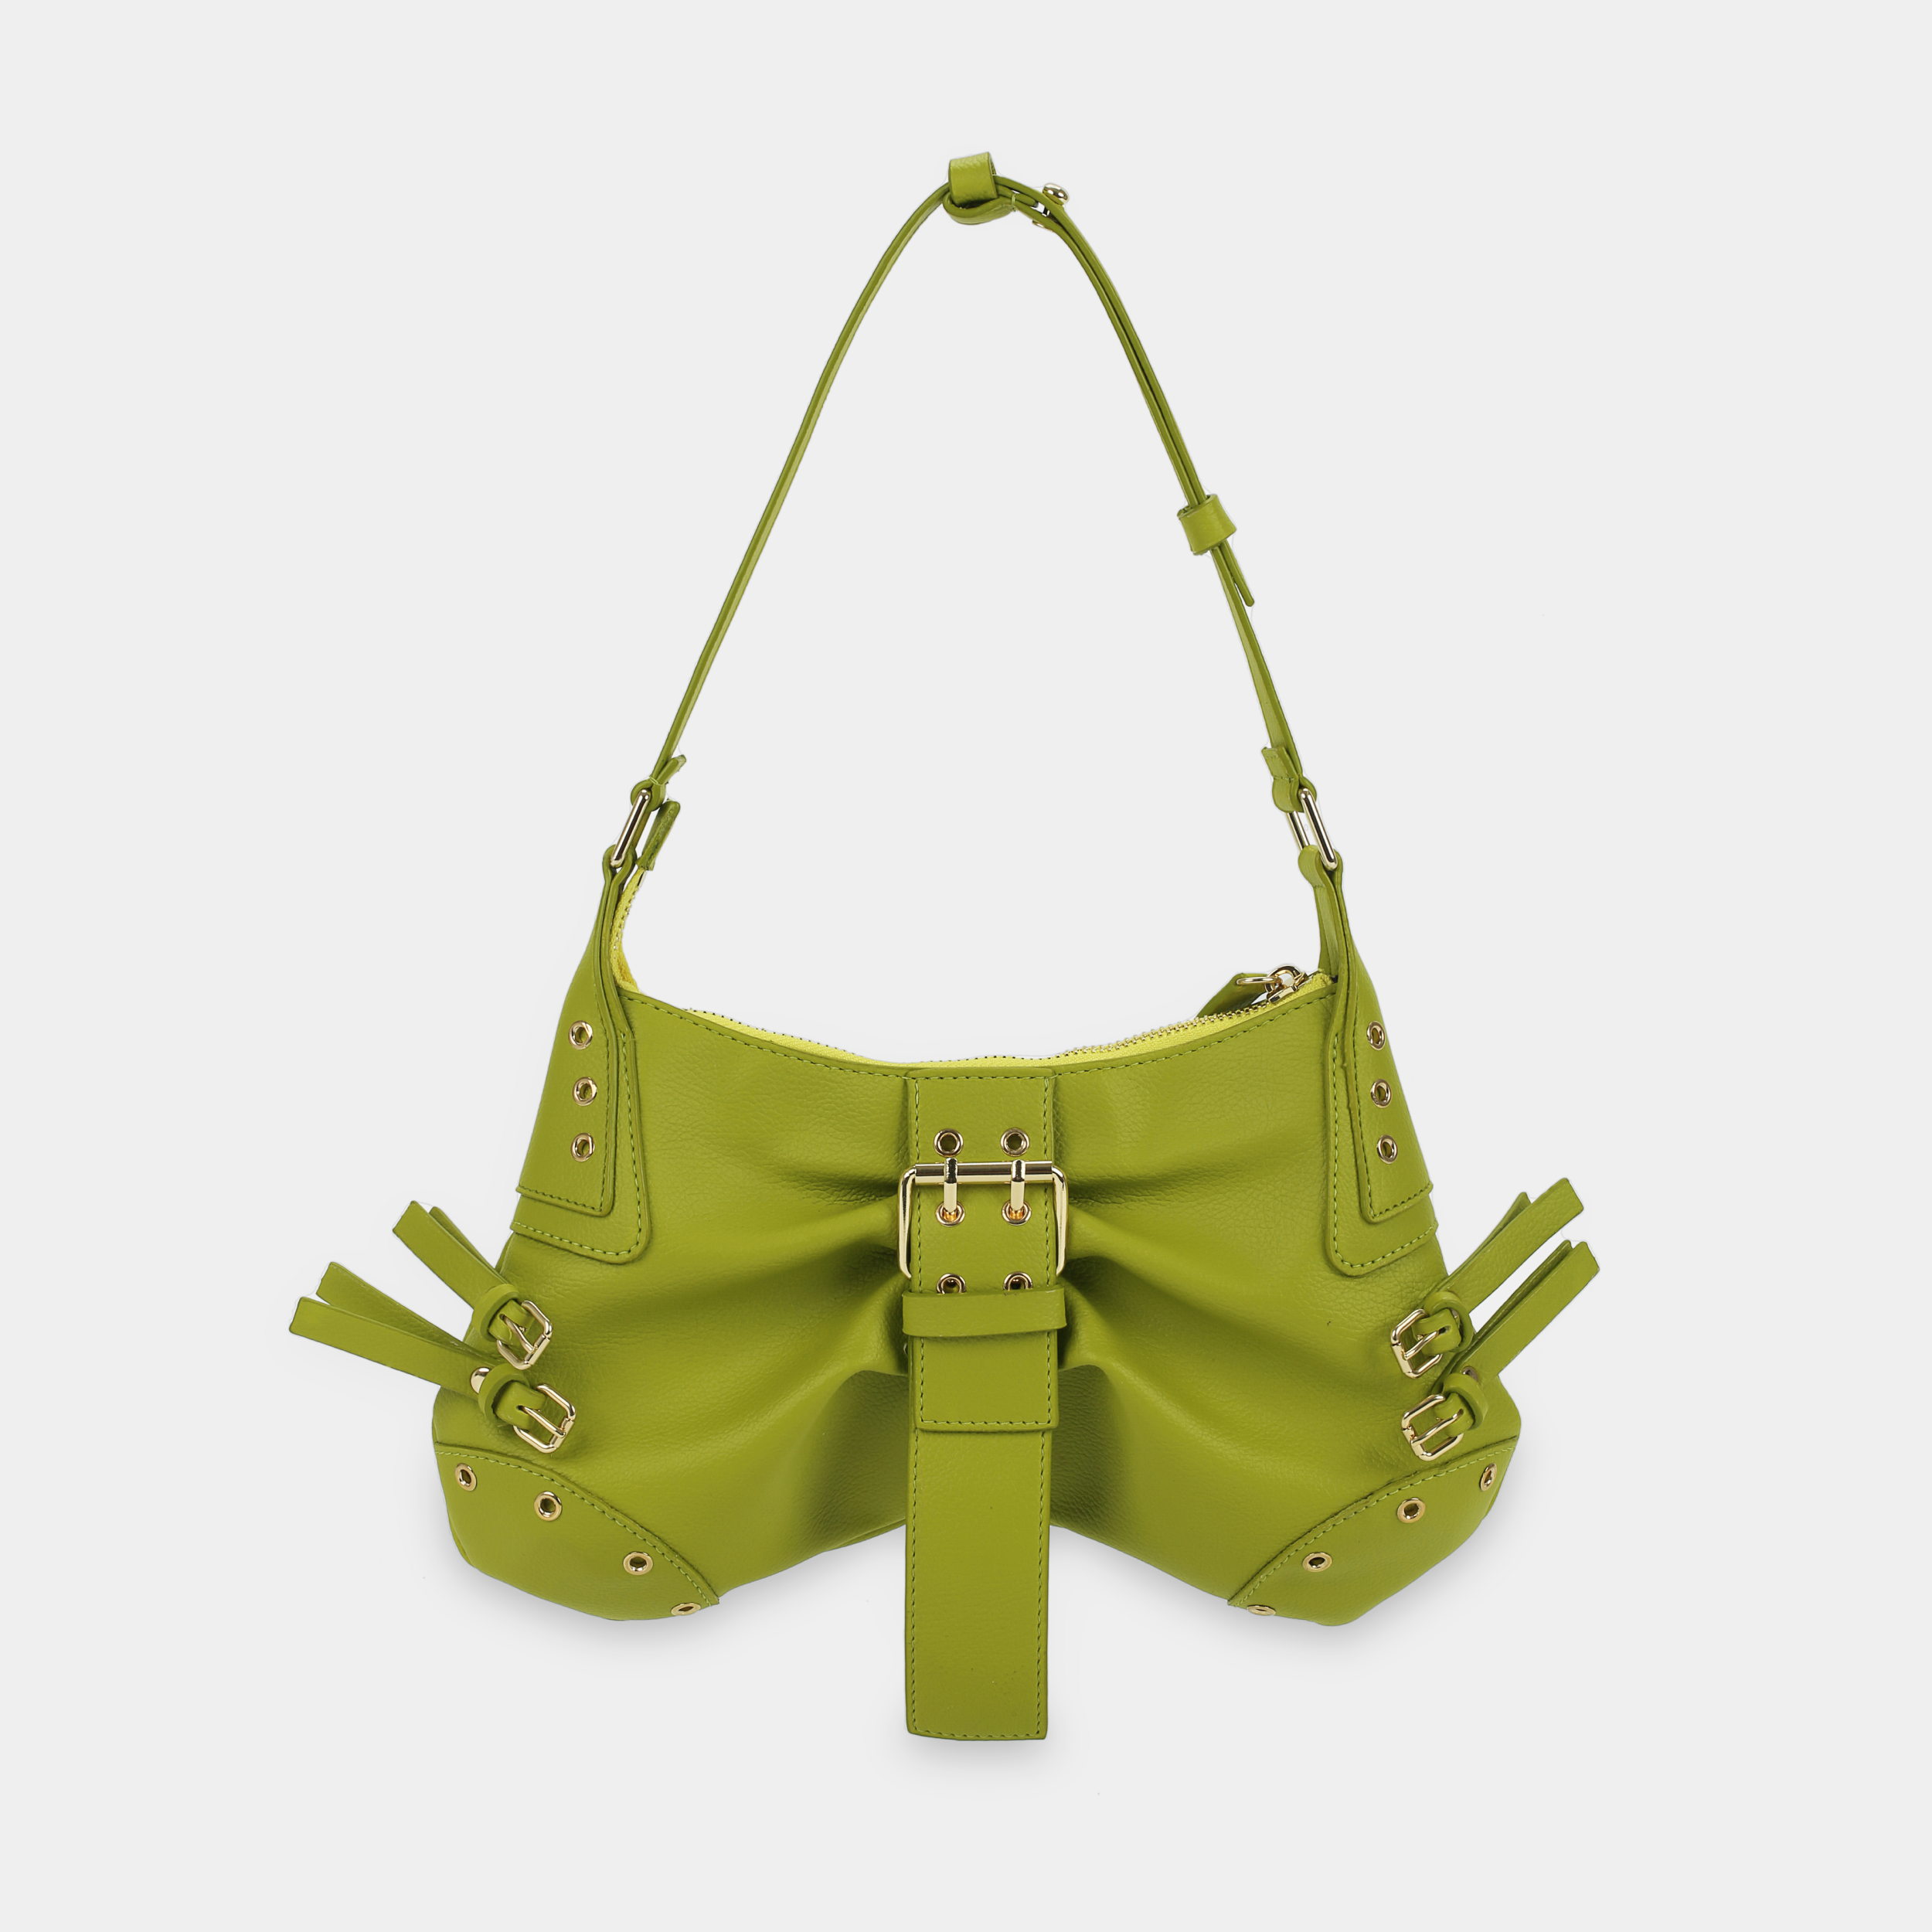 BUTTERFLY Handbag in Avocado Green